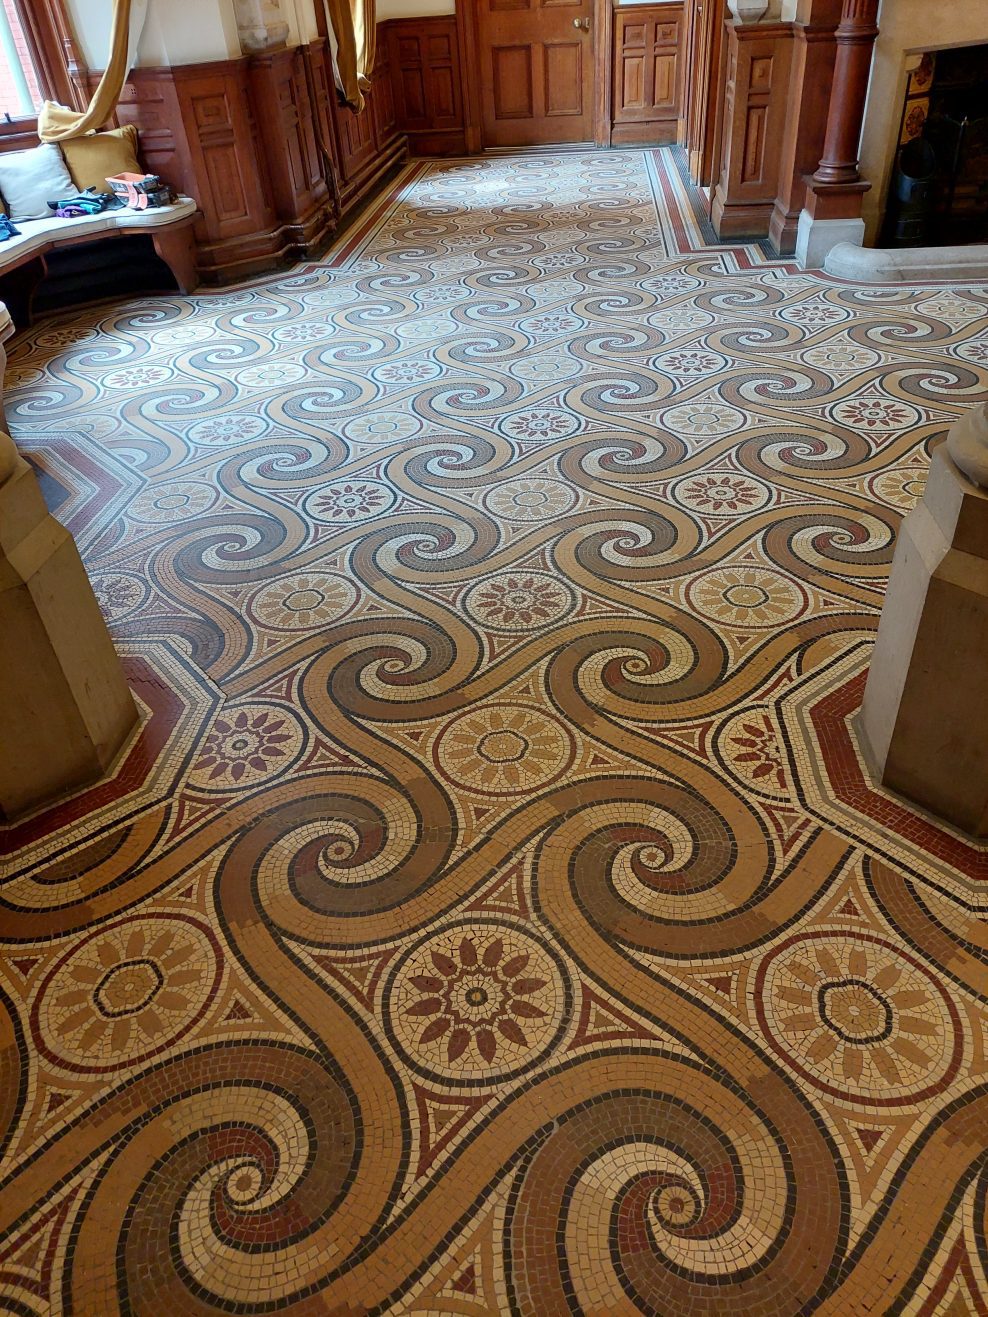 Rainford Hall mosaic floor.